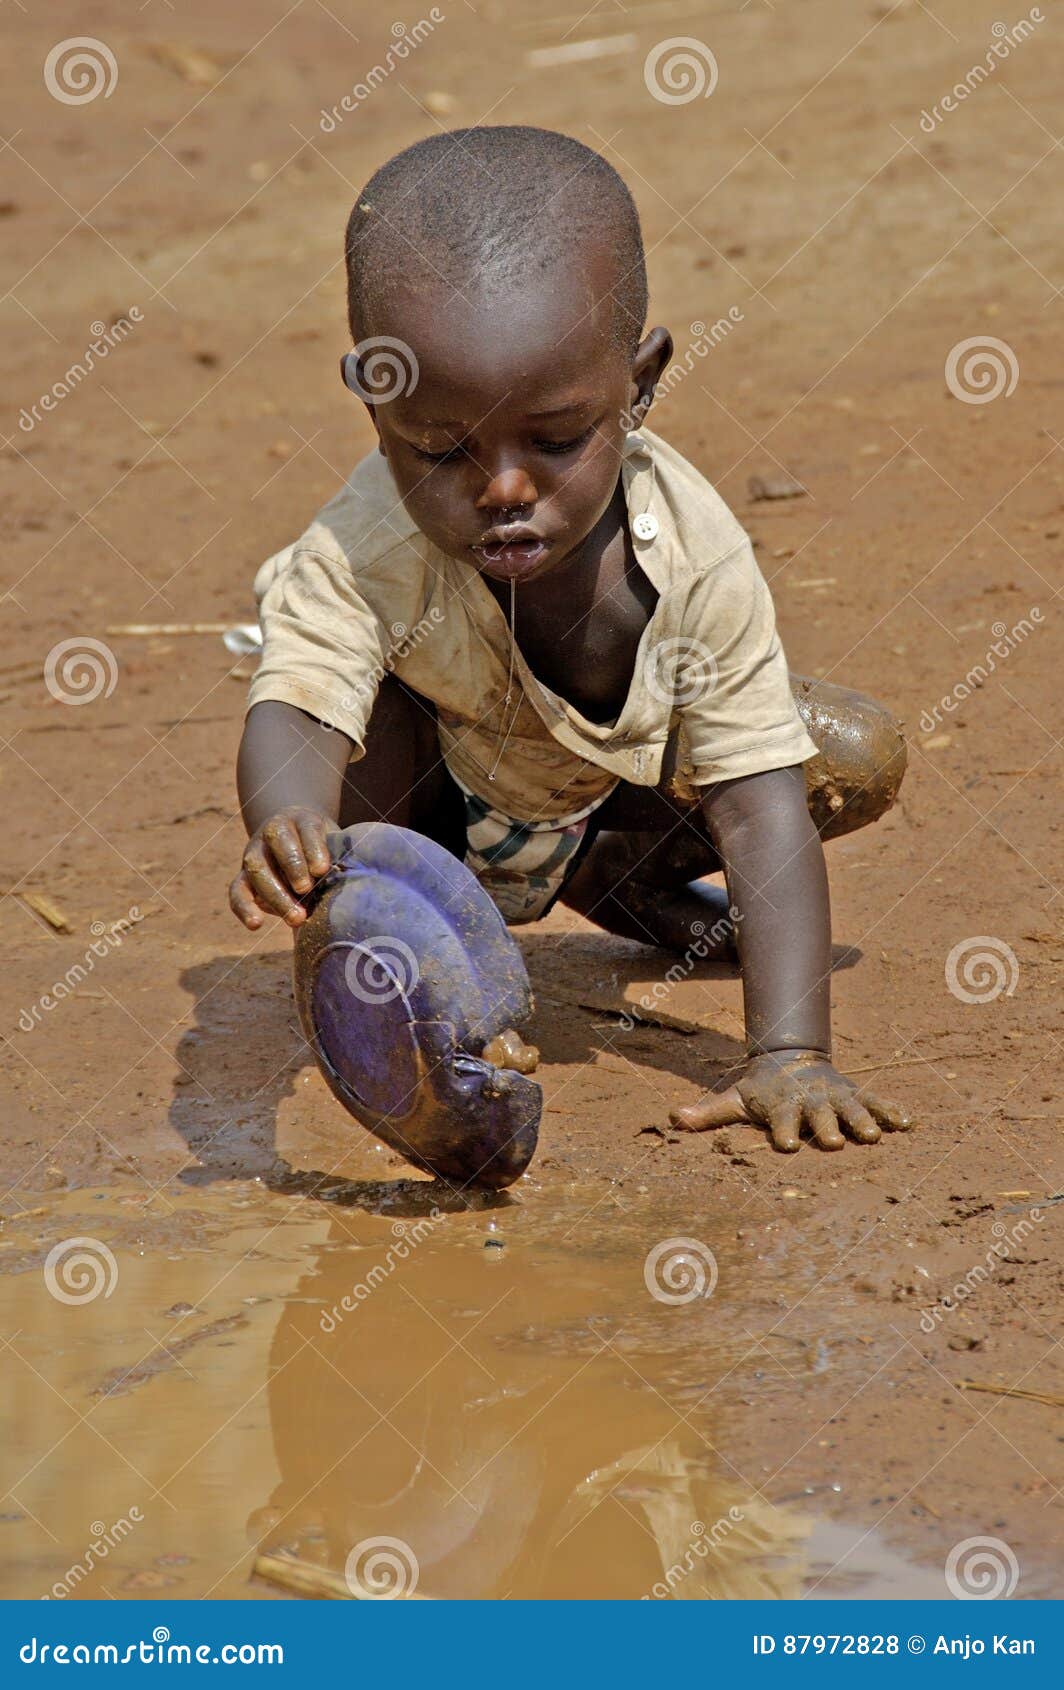 联合国：非洲之角将现大饥荒，1000多万儿童面临极端饥饿|索马里|非洲之角|联合国_新浪新闻